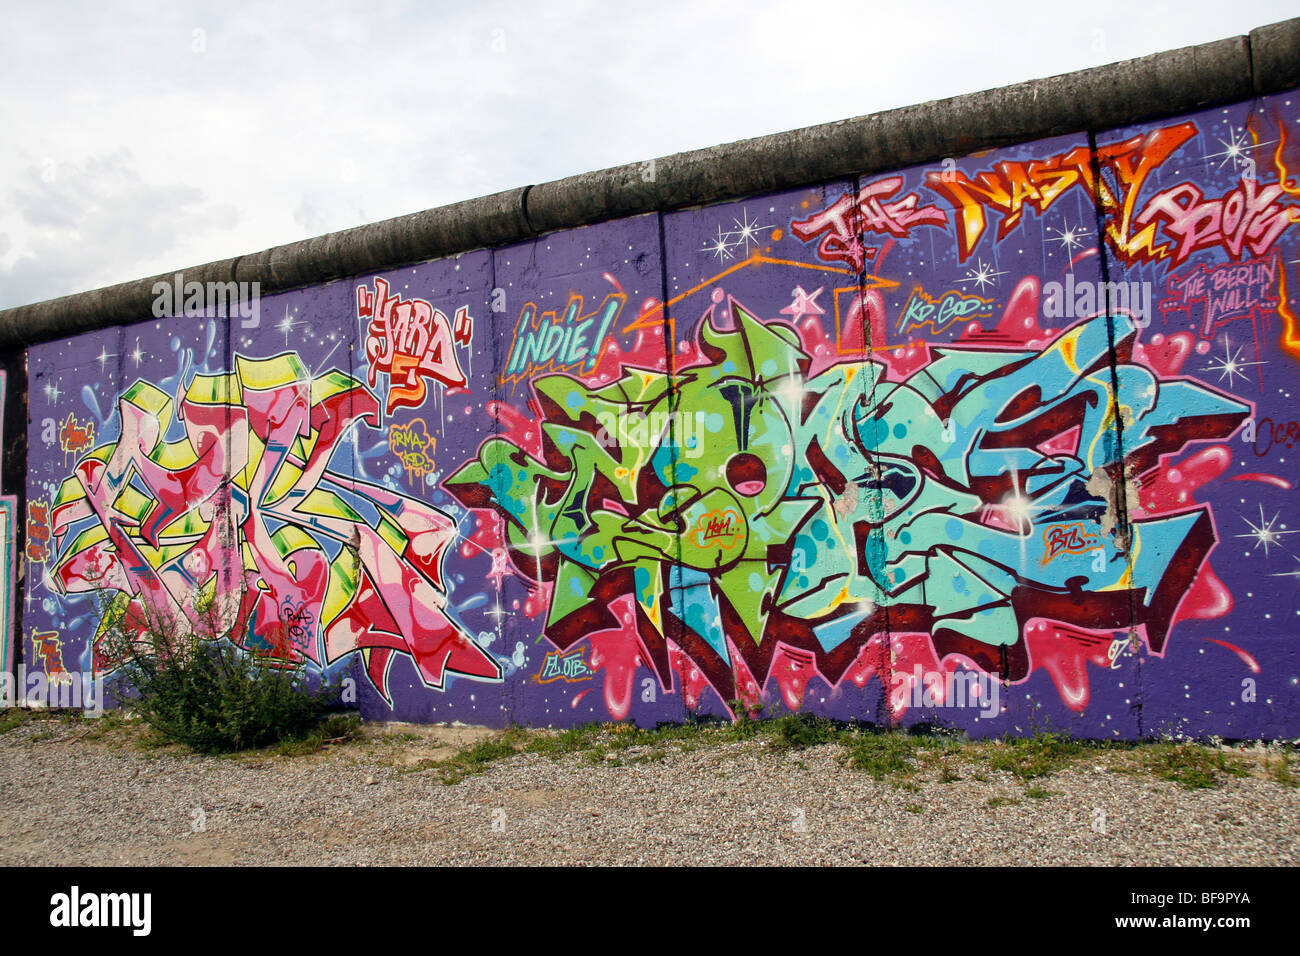 Sul lato occidentale del Muro di Berlino, all'East Side Gallery, a 1.3km-lungo la sezione della parete vicino al centro di Berlino. Foto Stock